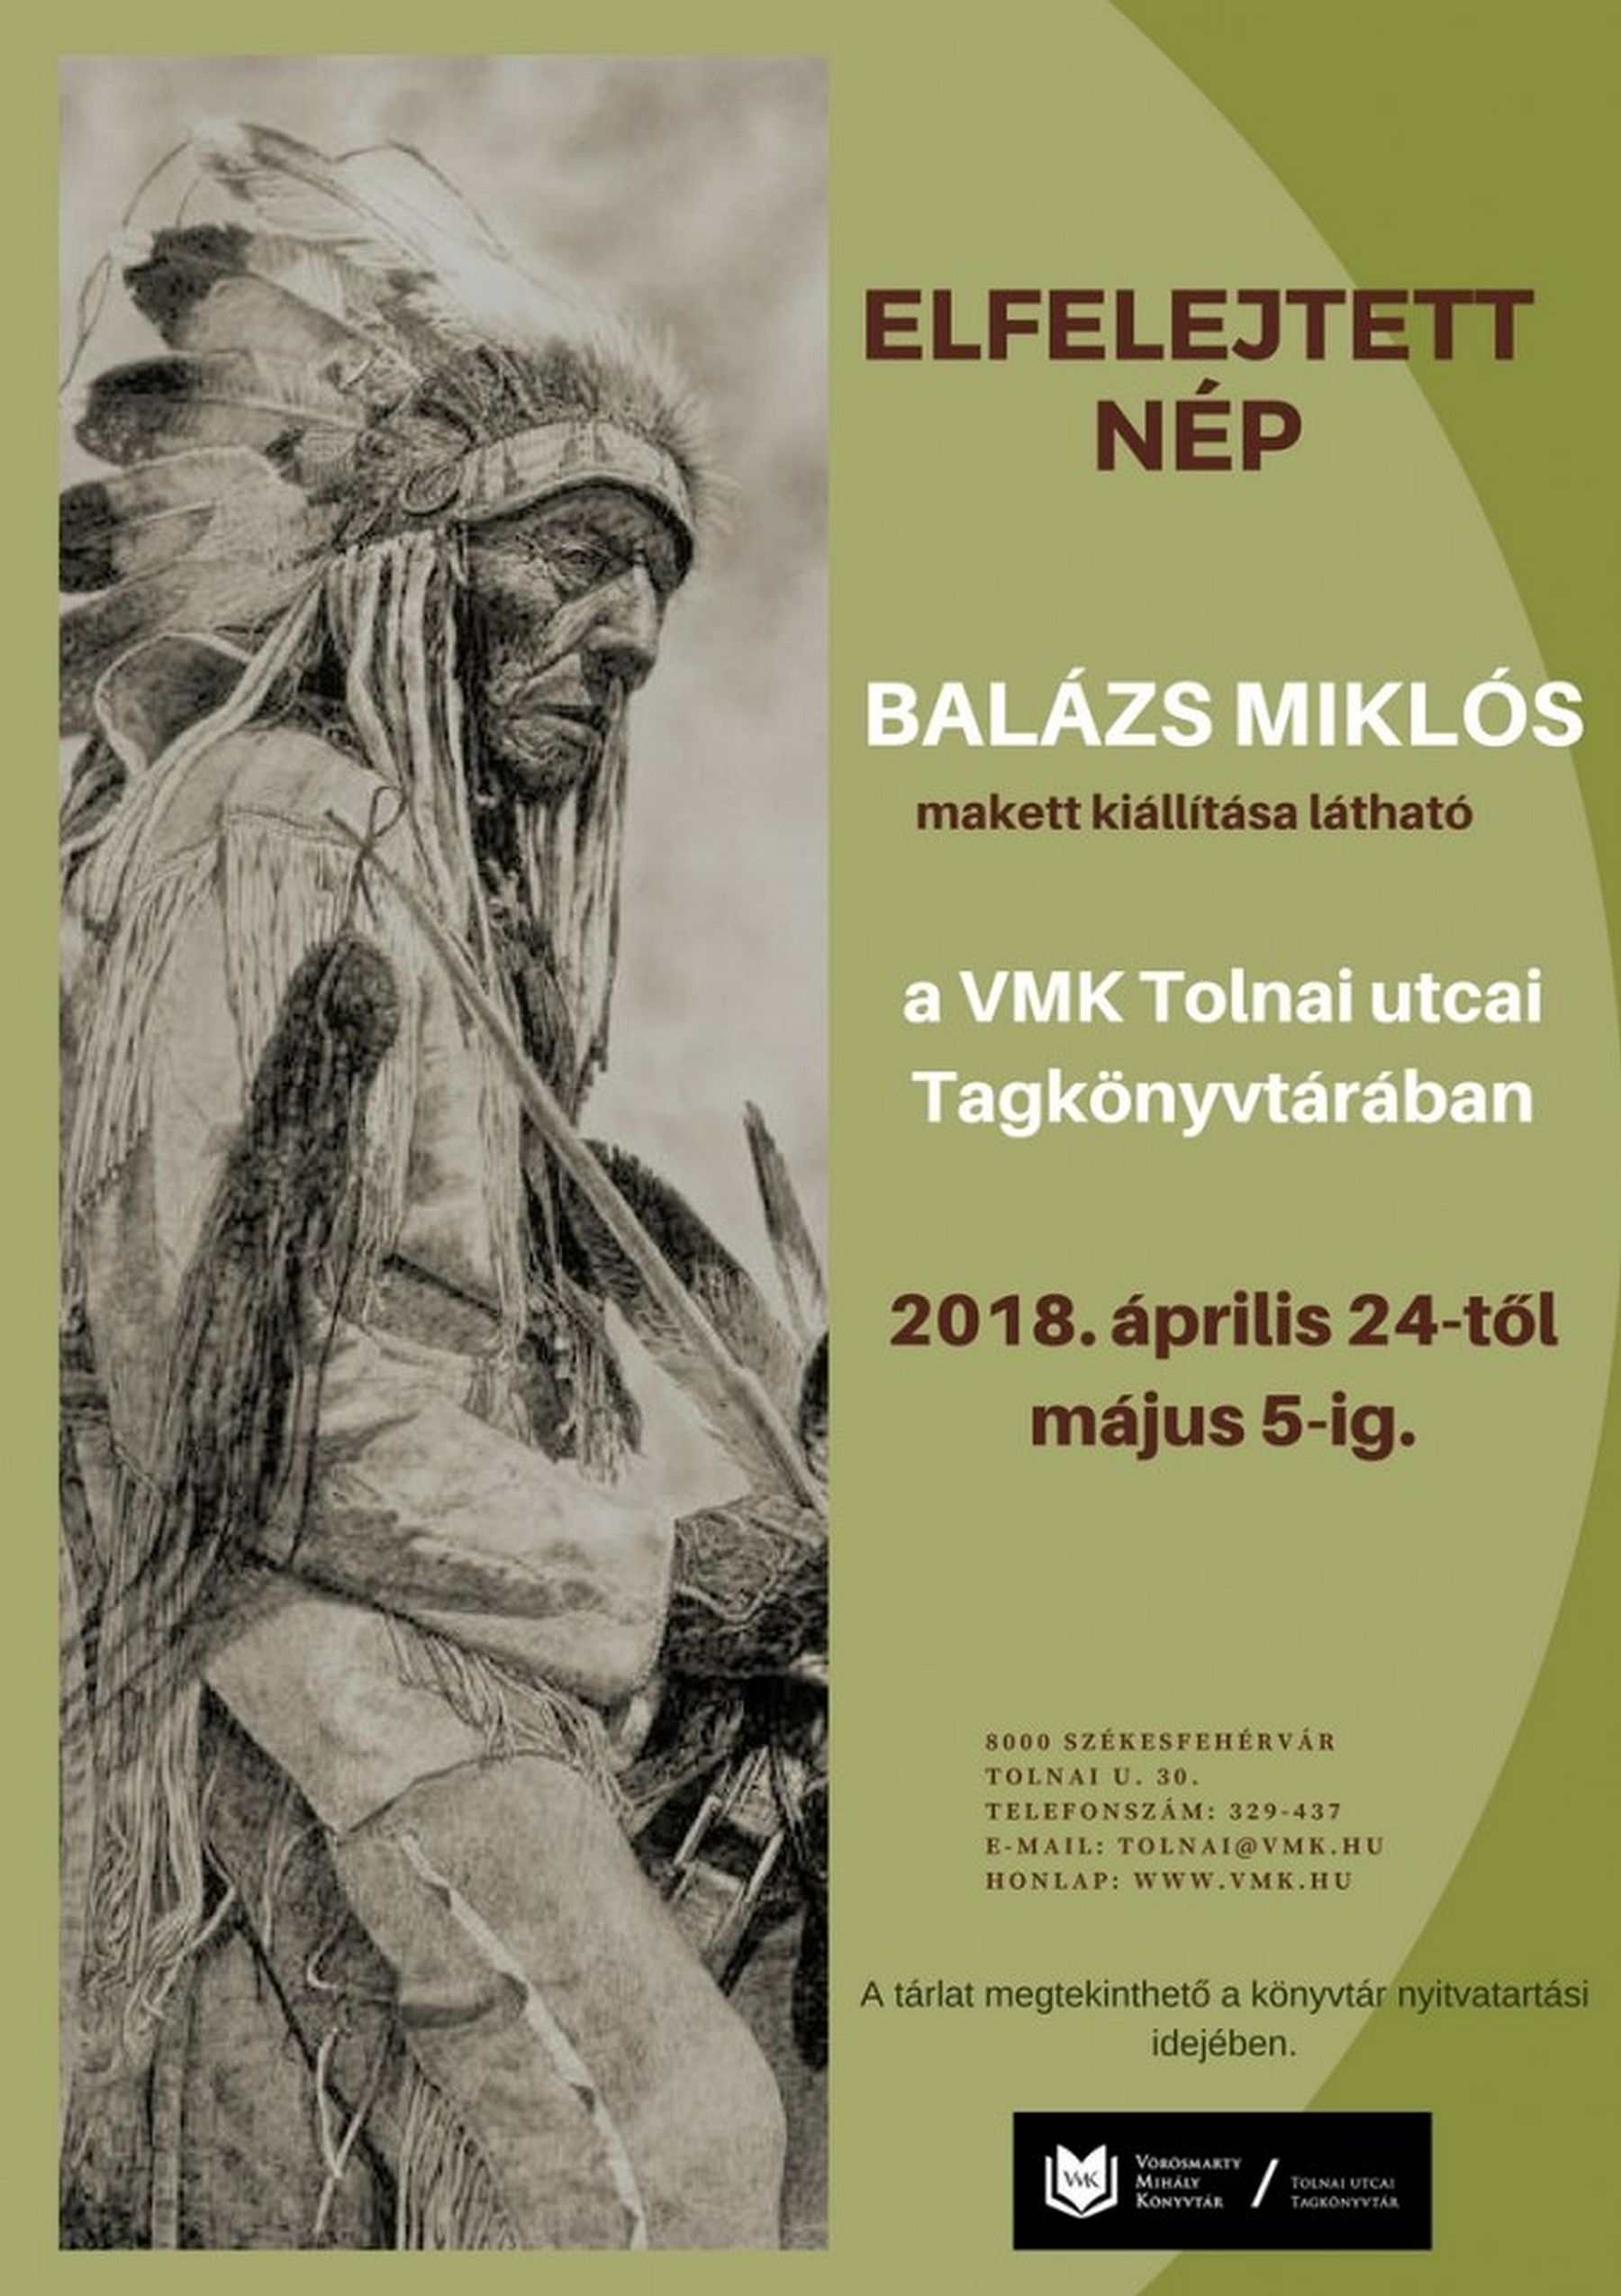 Elfelejtett nép - Balázs Miklós makett kiállítása a Tolnai utcai Tagkönyvtárban